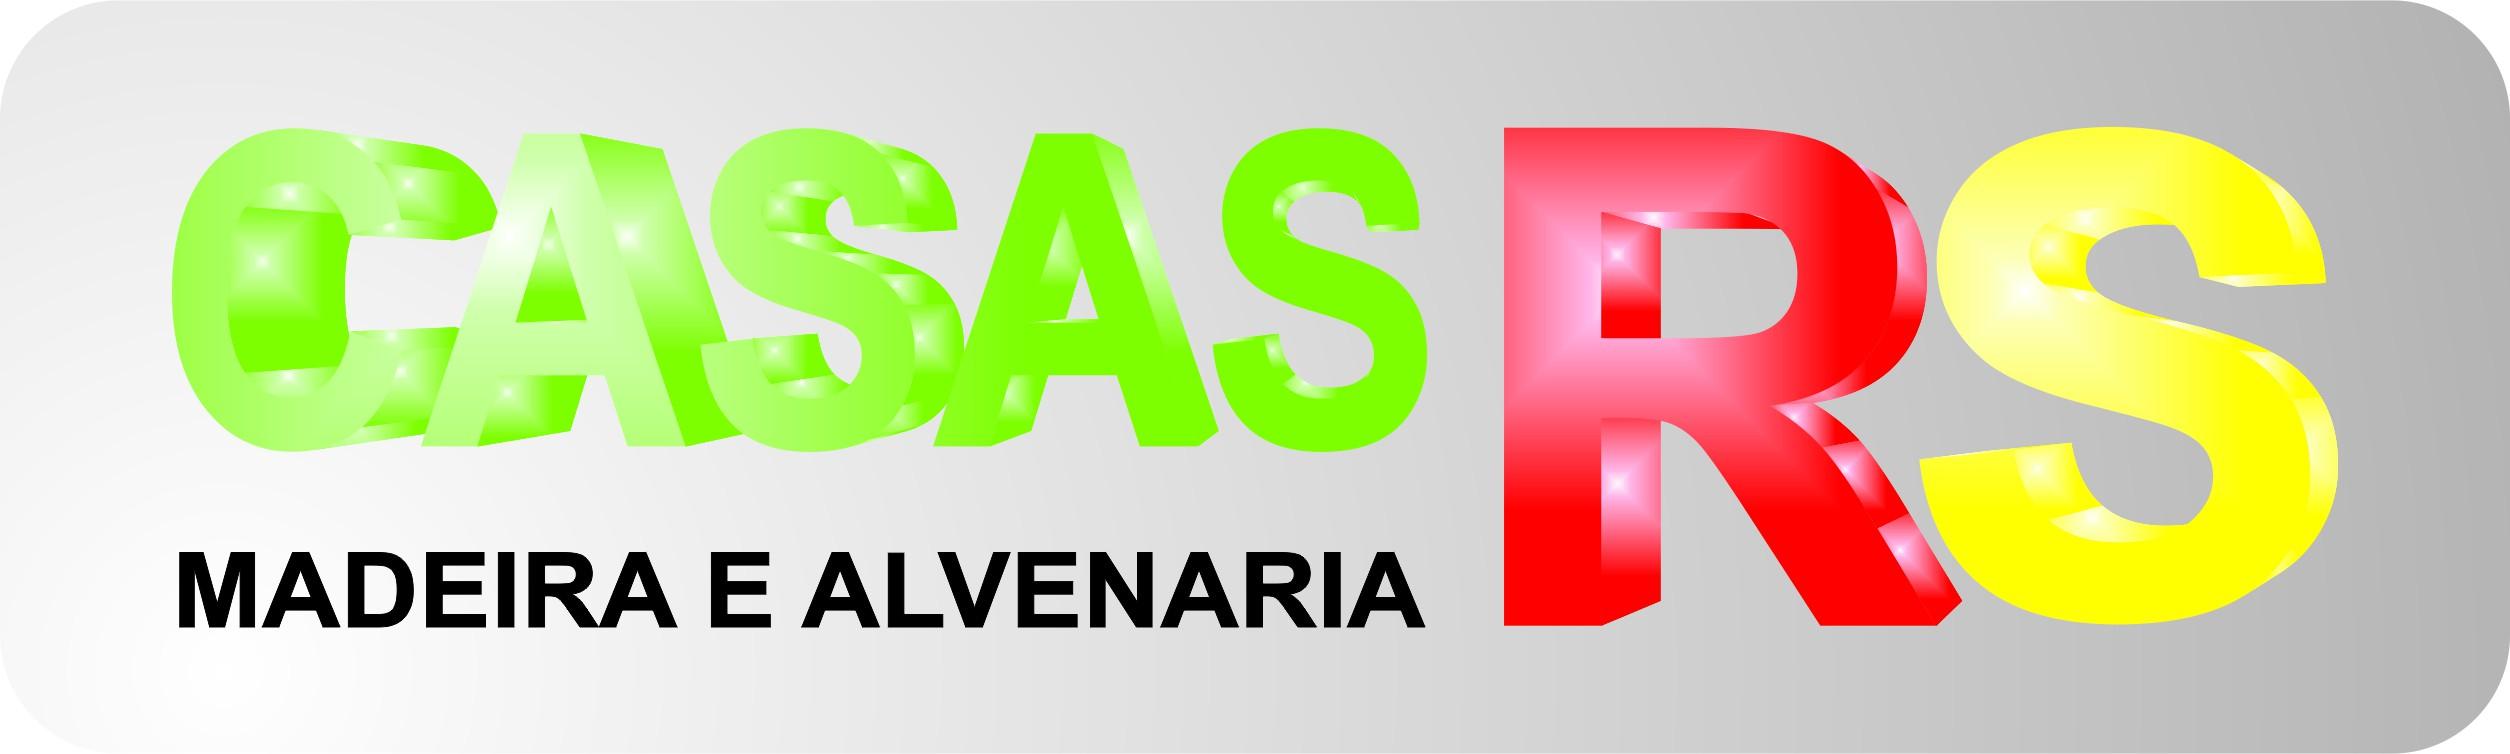 RS Casas logo